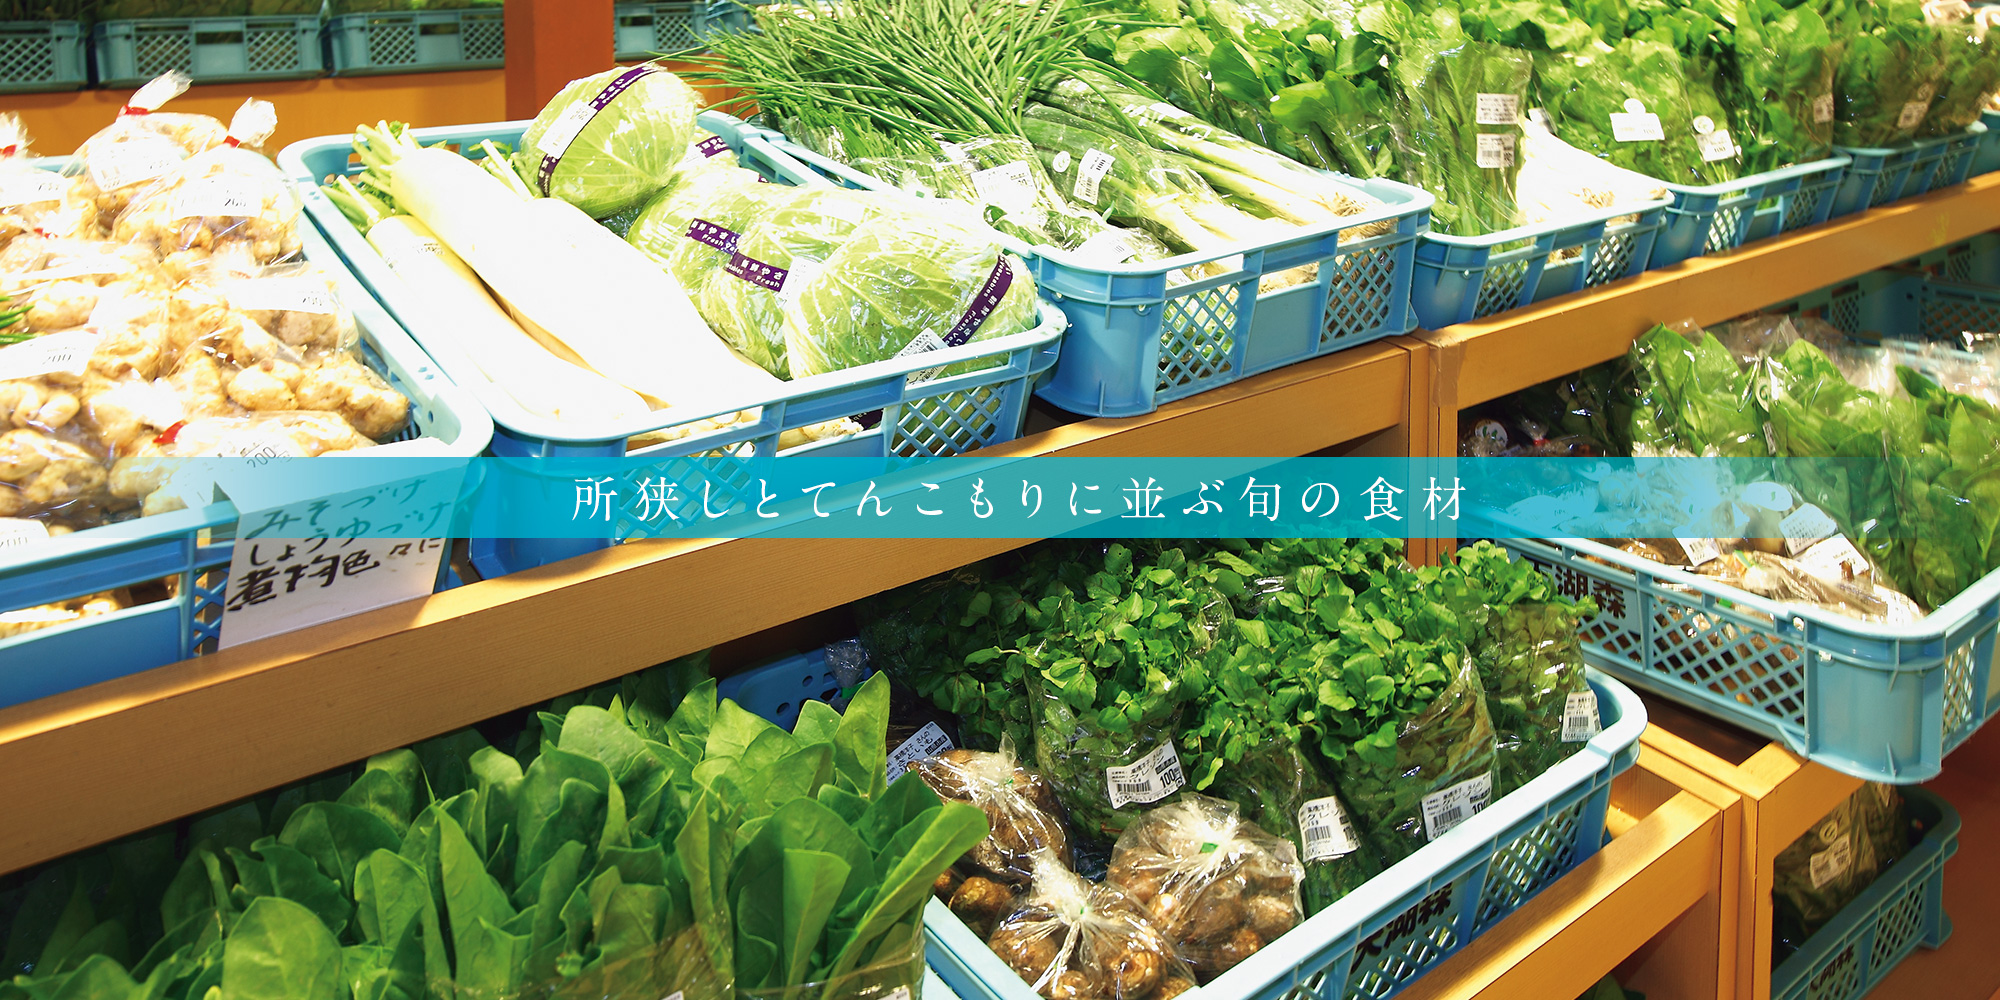 てんこもり伊自良 | 岐阜・山県の野菜直売所とレストラン